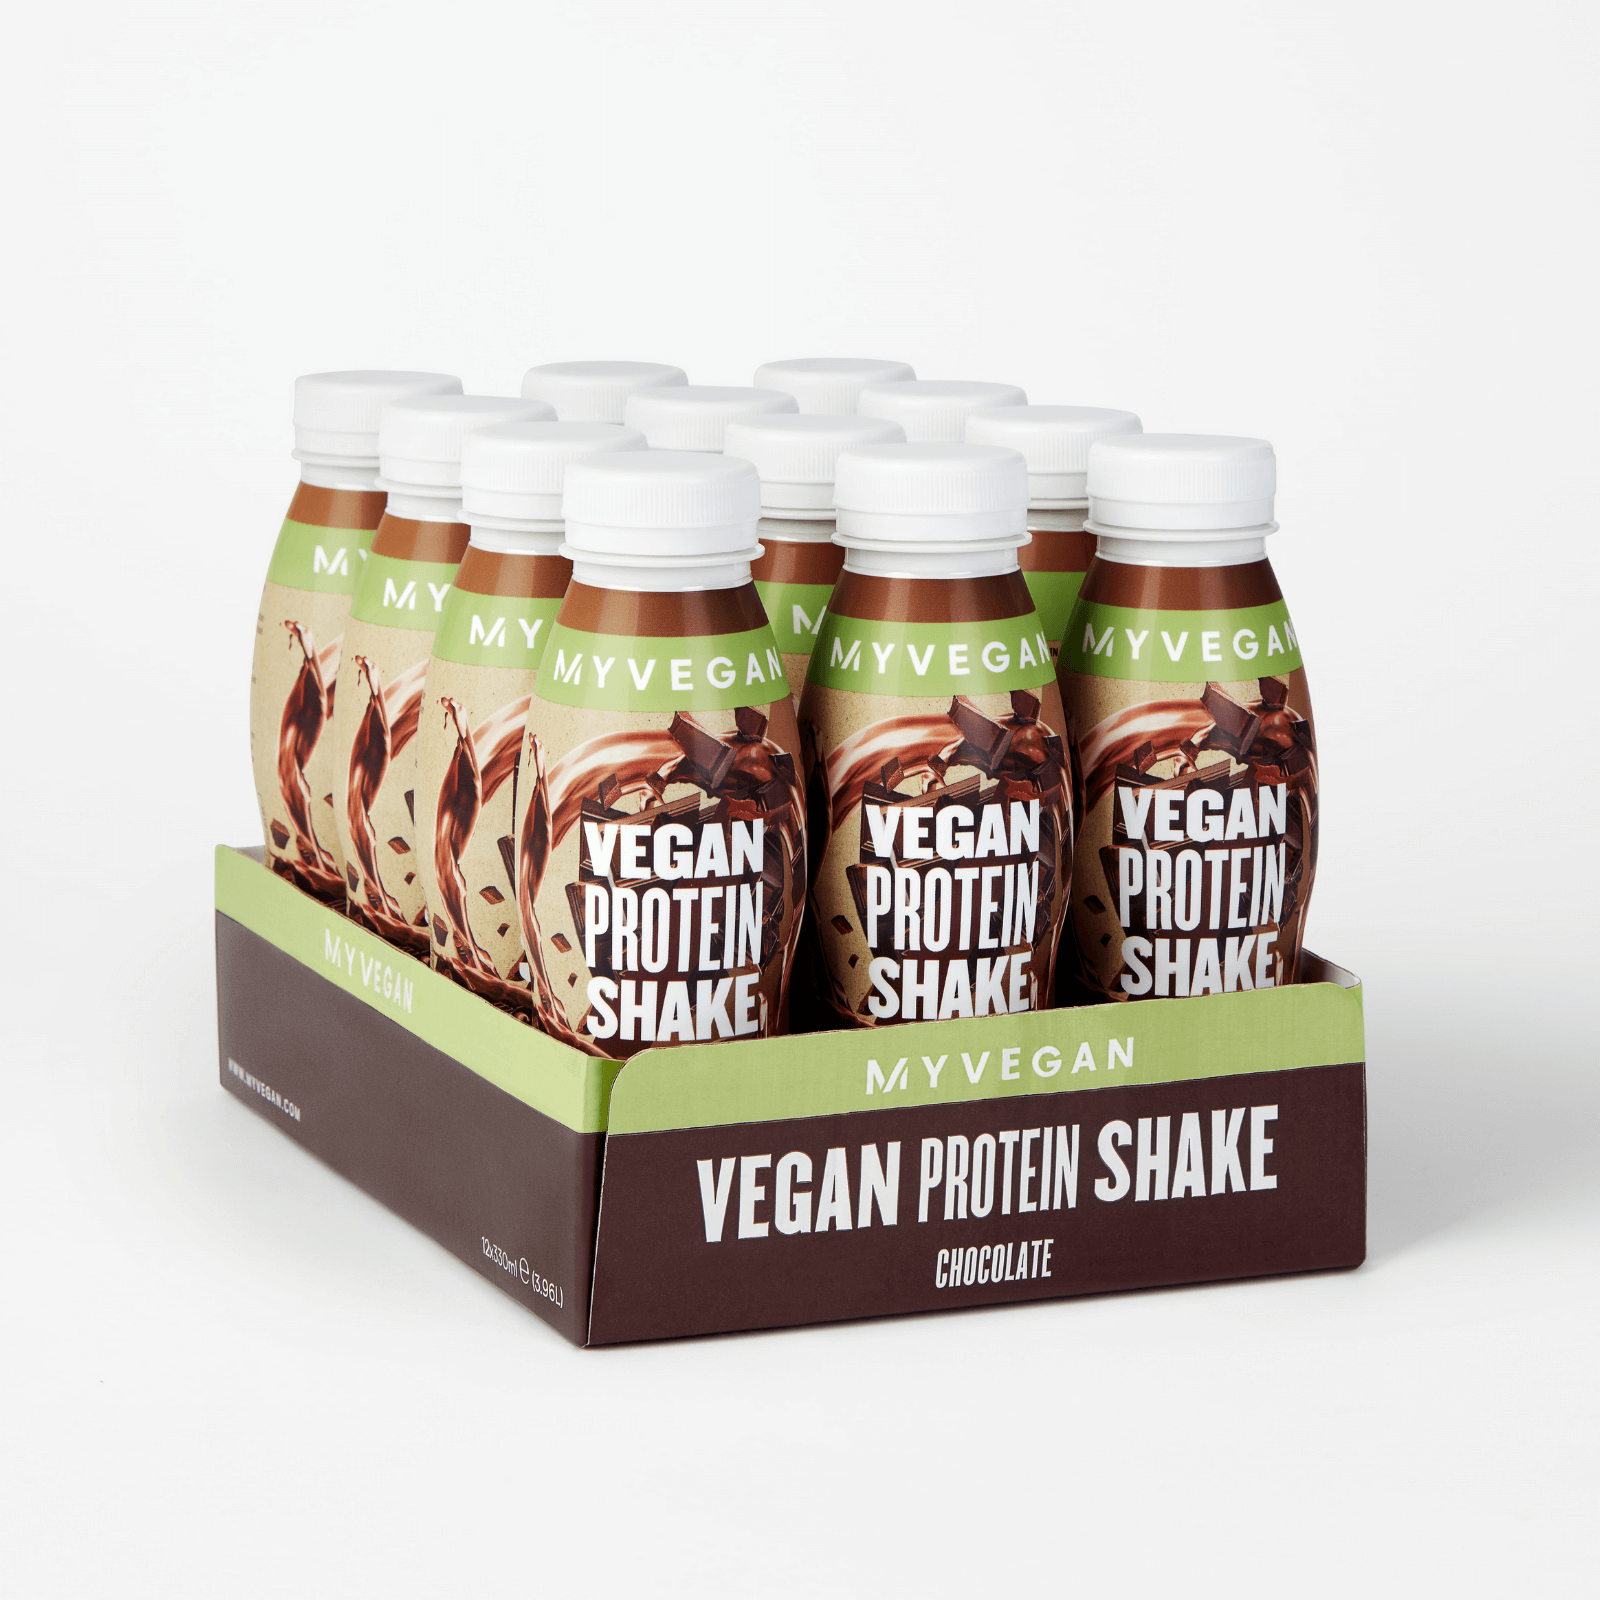 Vegan protein shake